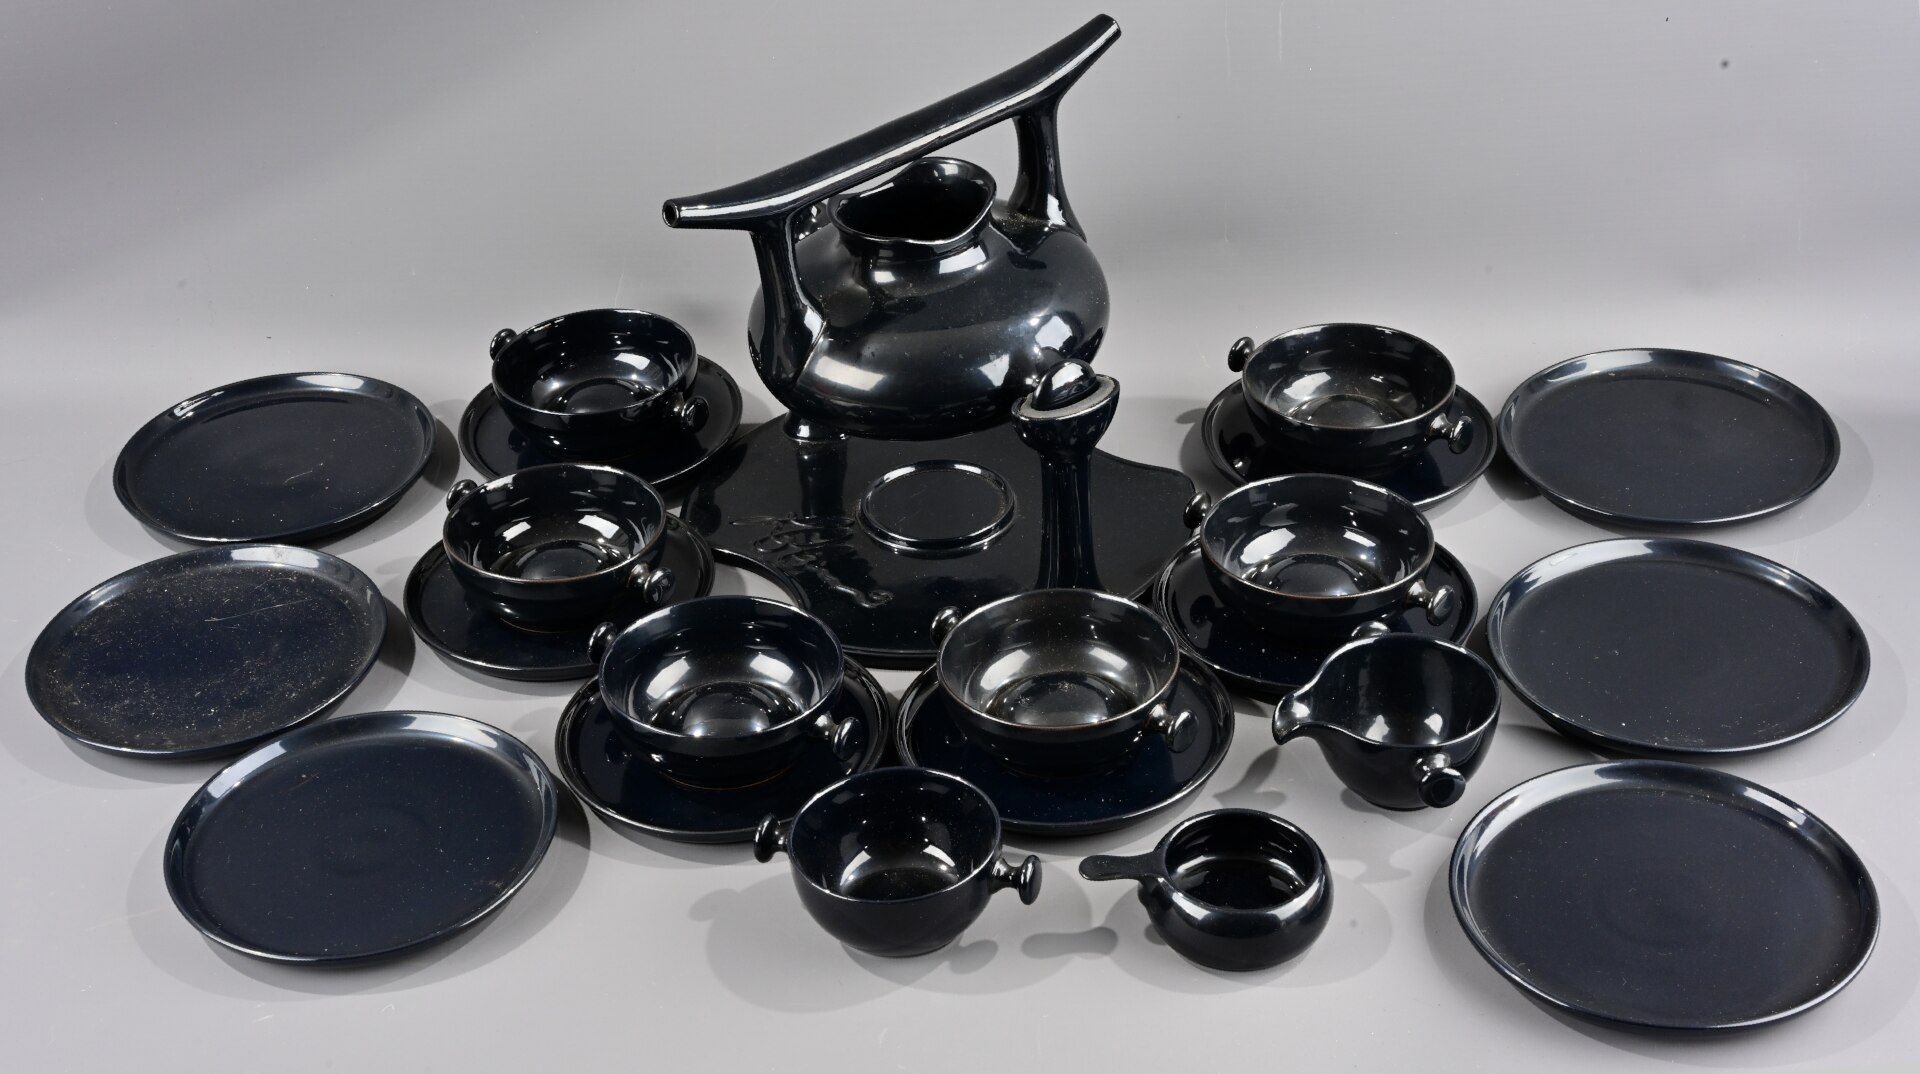 23 teiliges "ZEN" - Teeservice für 6 Personen, Entwurf von Luigi Colani (1928-2019), schwarz glasie